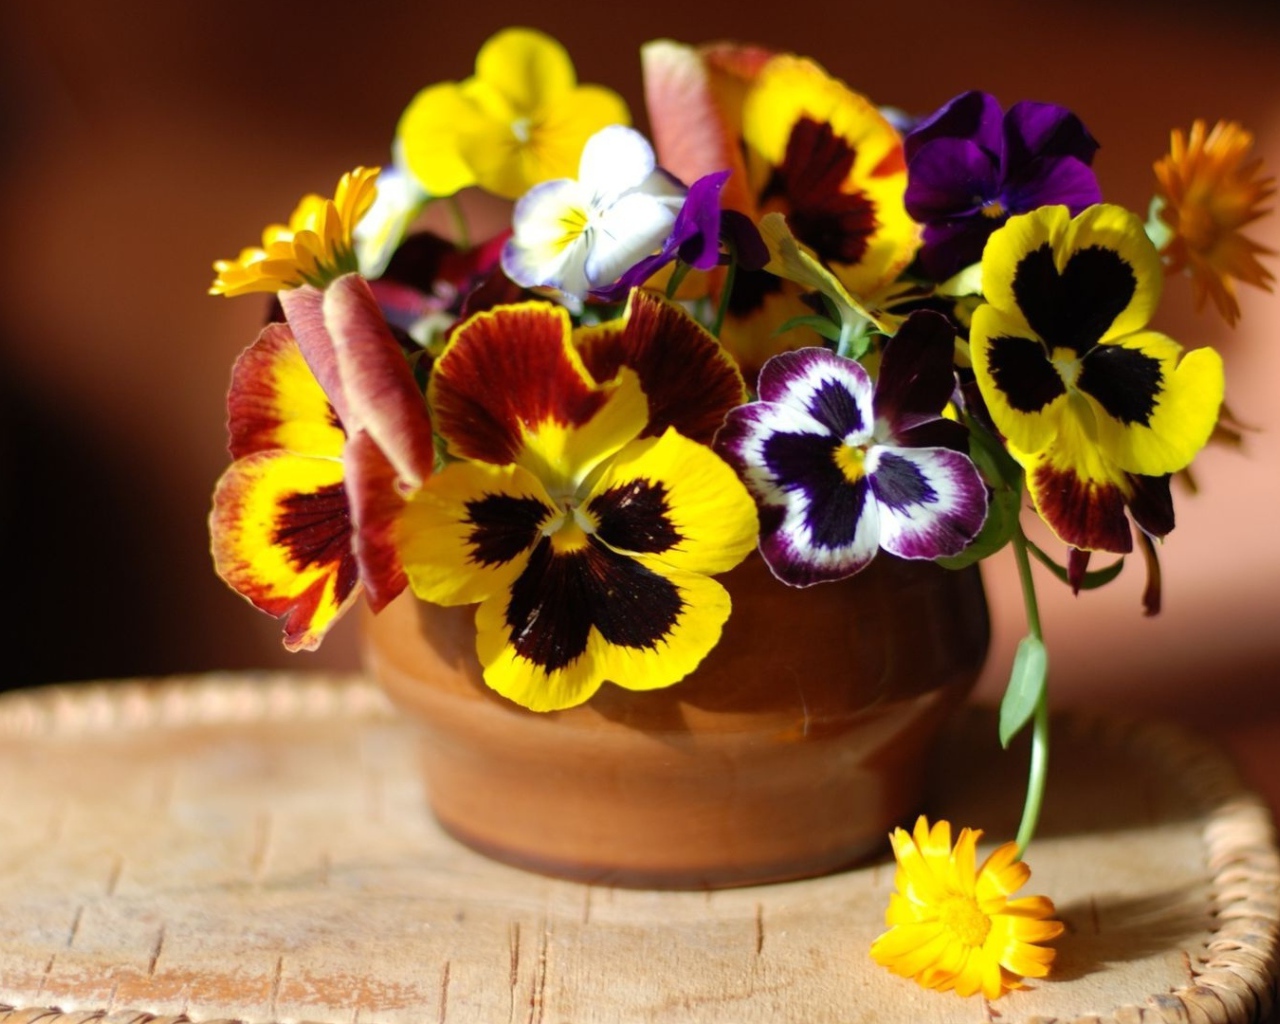 Цветы виола (фиалка,анютины глазки) дома на столе